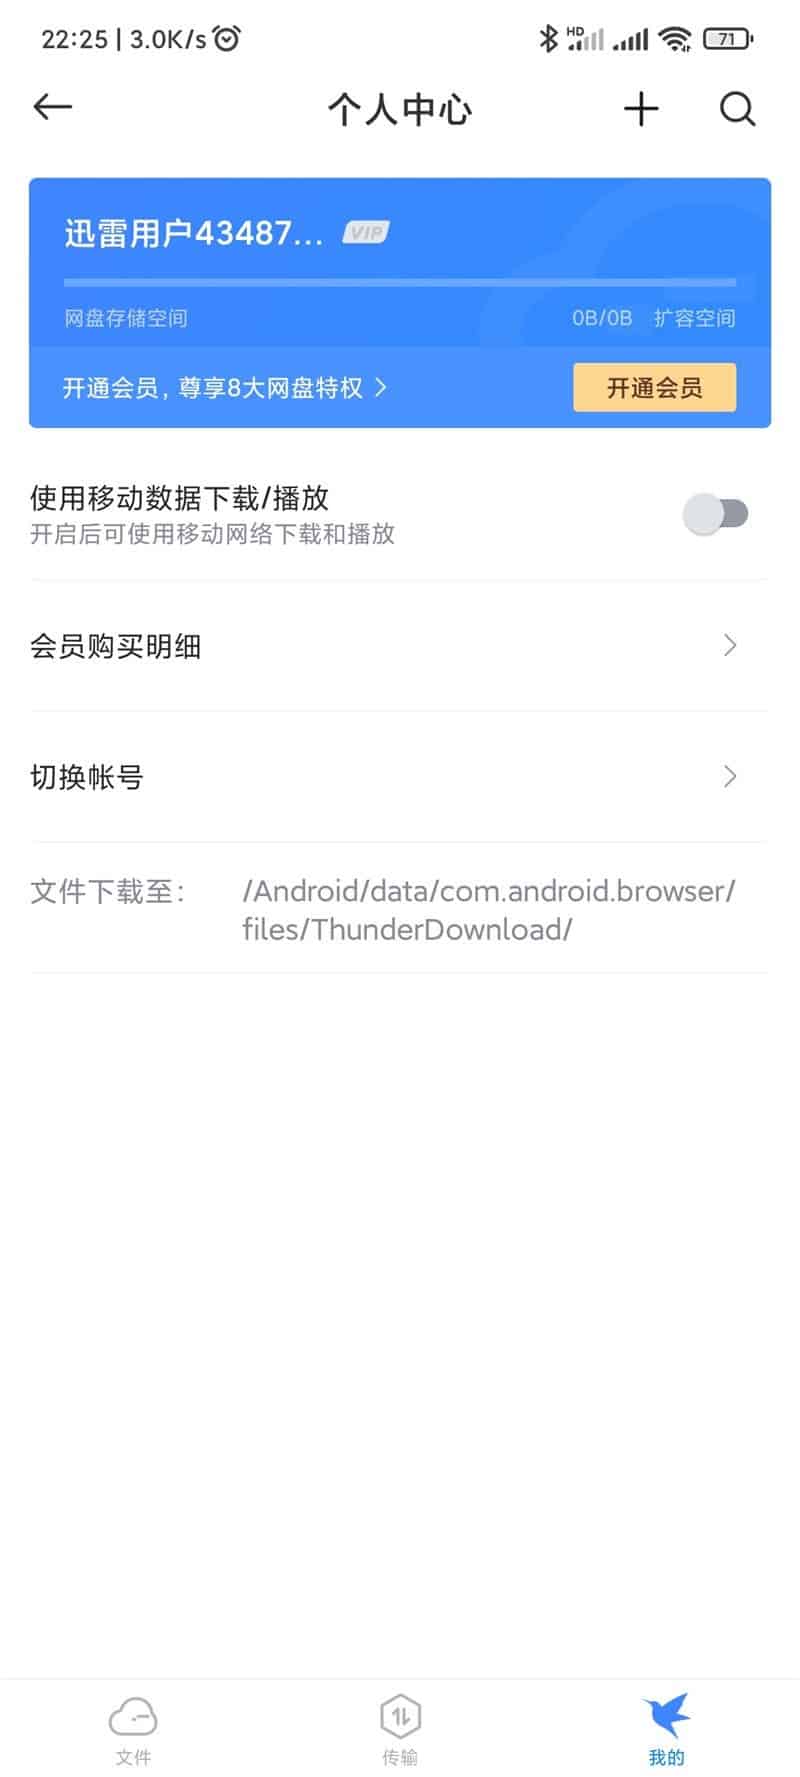 Xiaomi Mi Browser